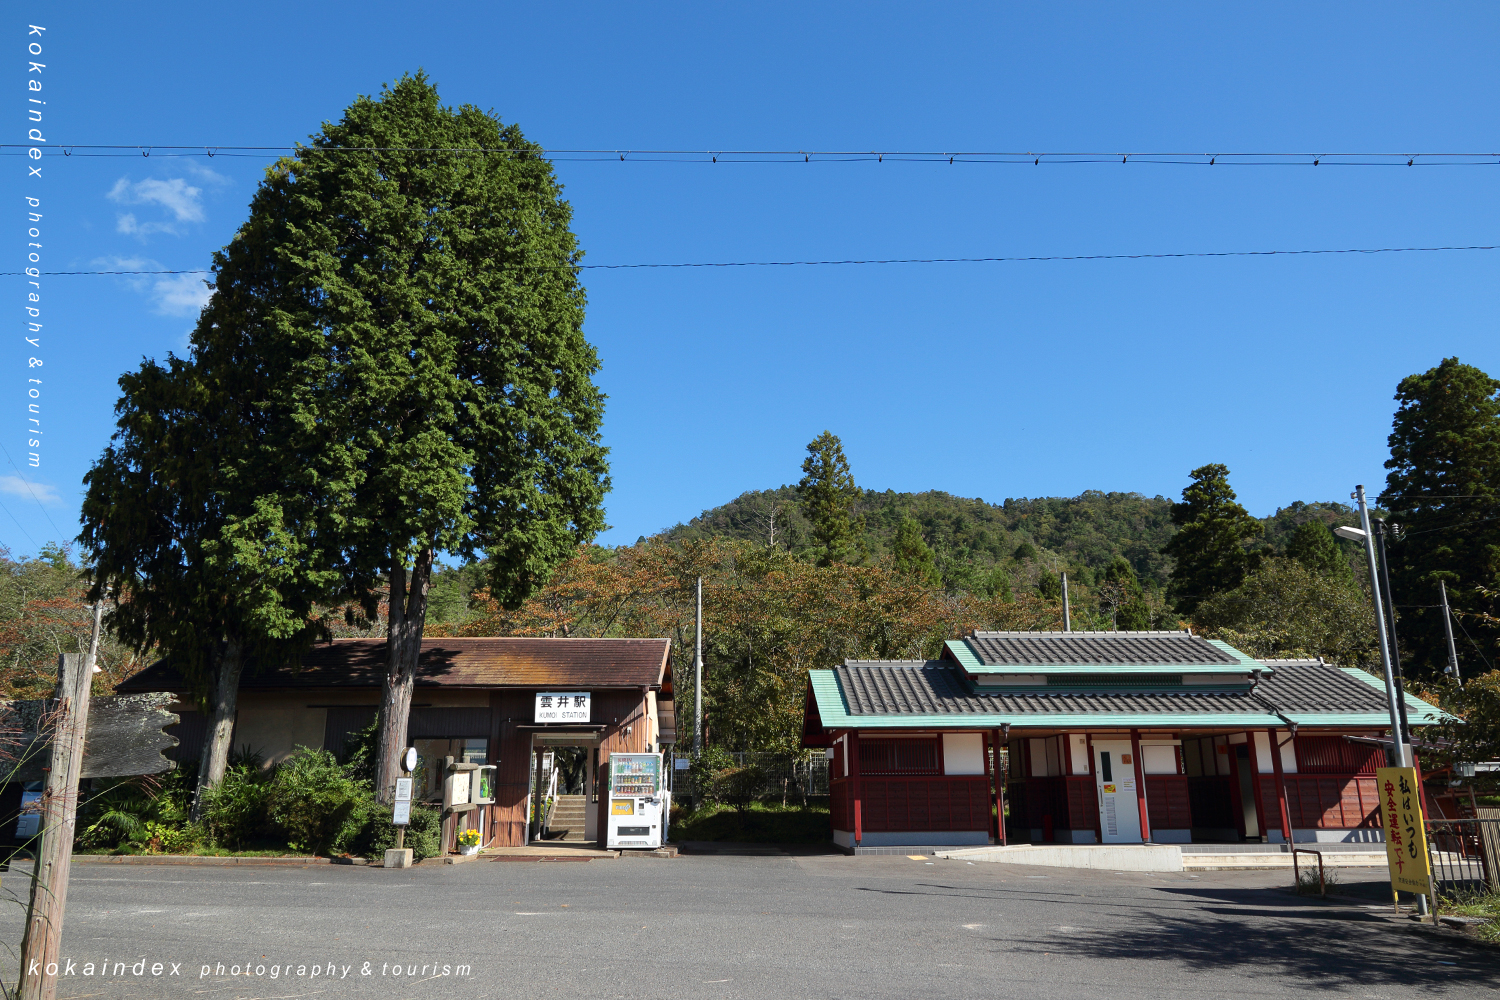 雲井駅 / 甲賀市のSKR・信楽高原鐵道ガイドと写真撮影スポット